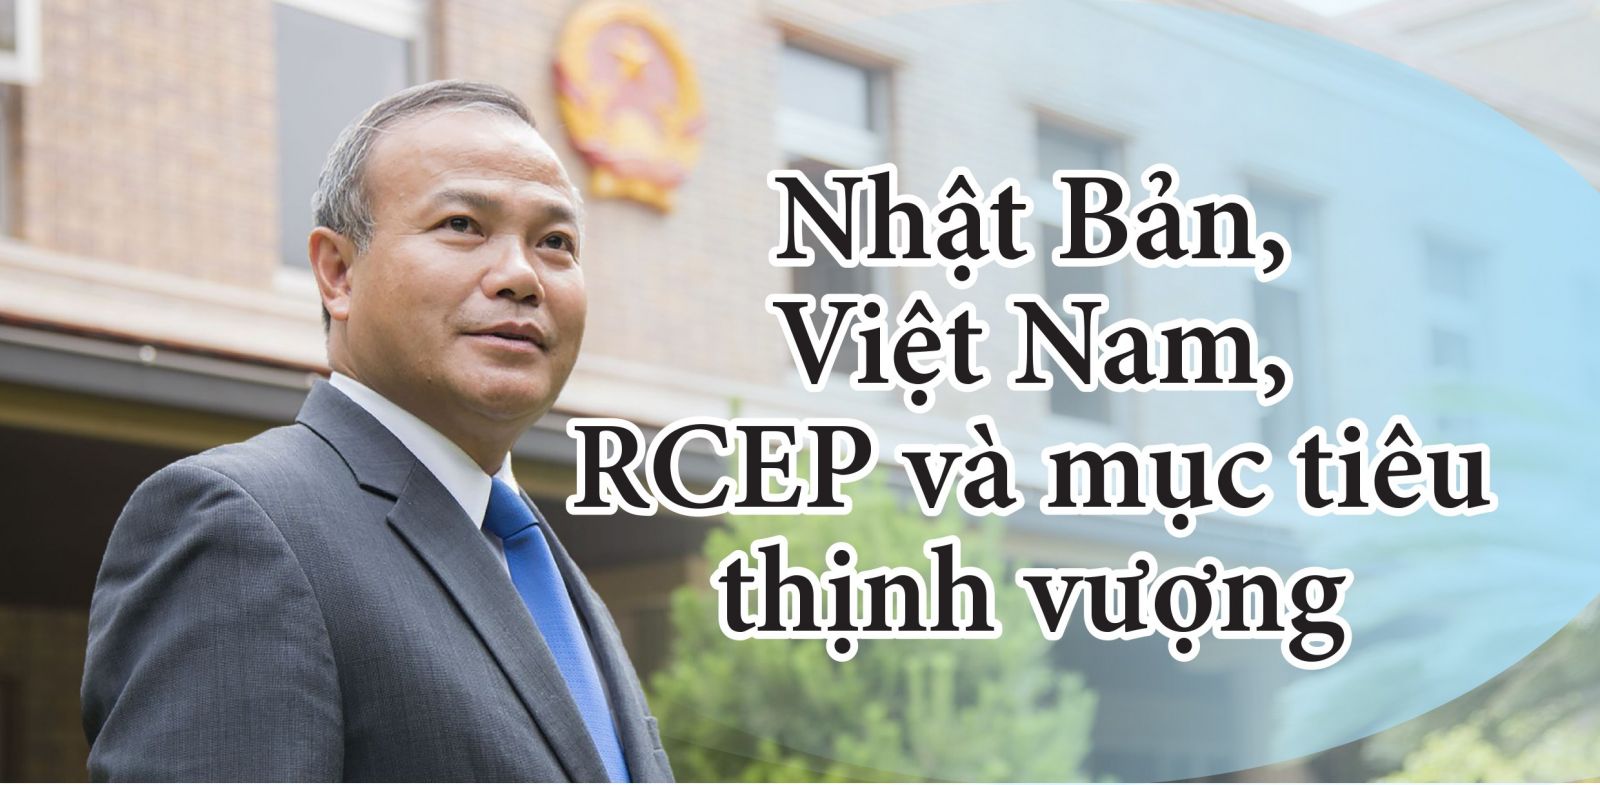 Nhật Bản, Việt Nam, RCEP và mục tiêu thịnh vượng